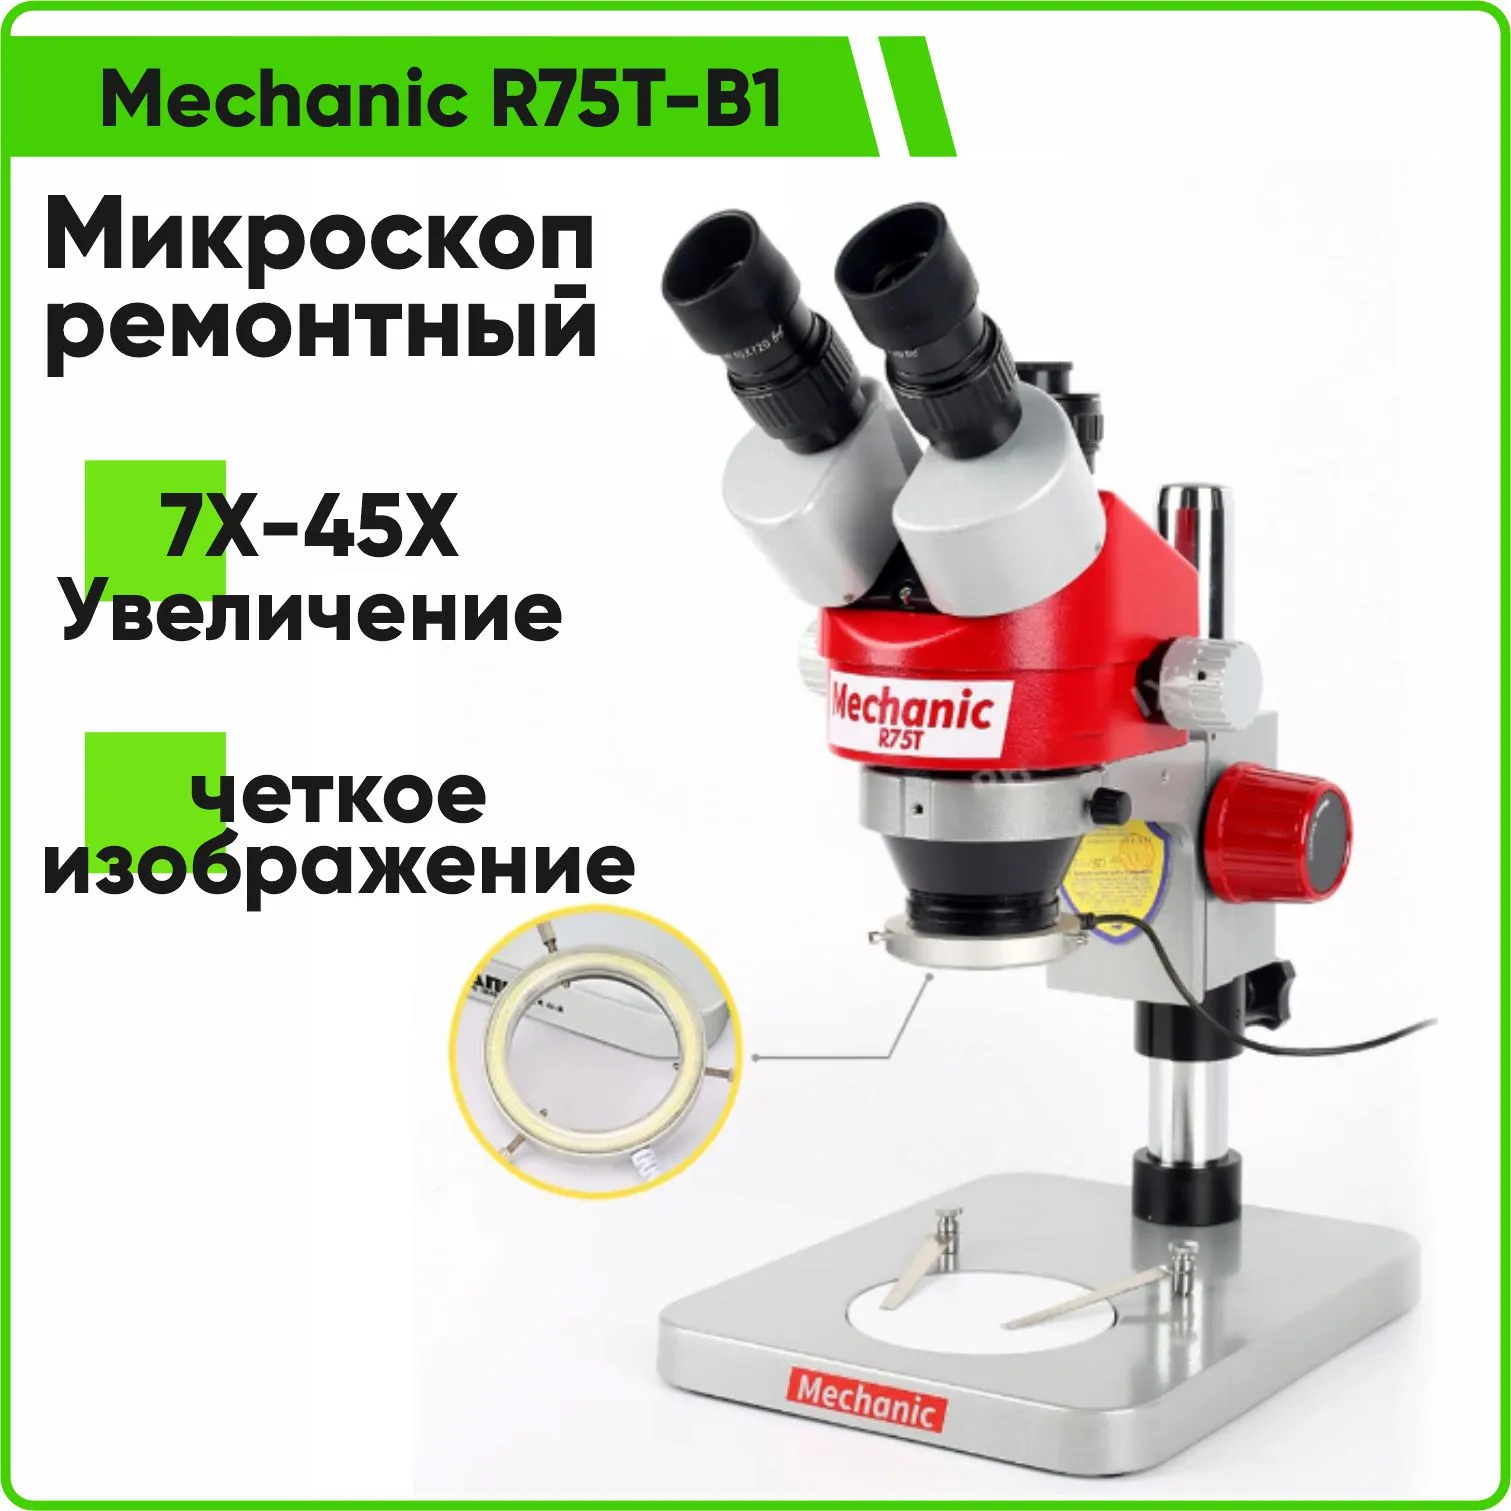 Микроскоп Mechanic R75T-B1 тринокулярный стереомикроскоп, ремонтный